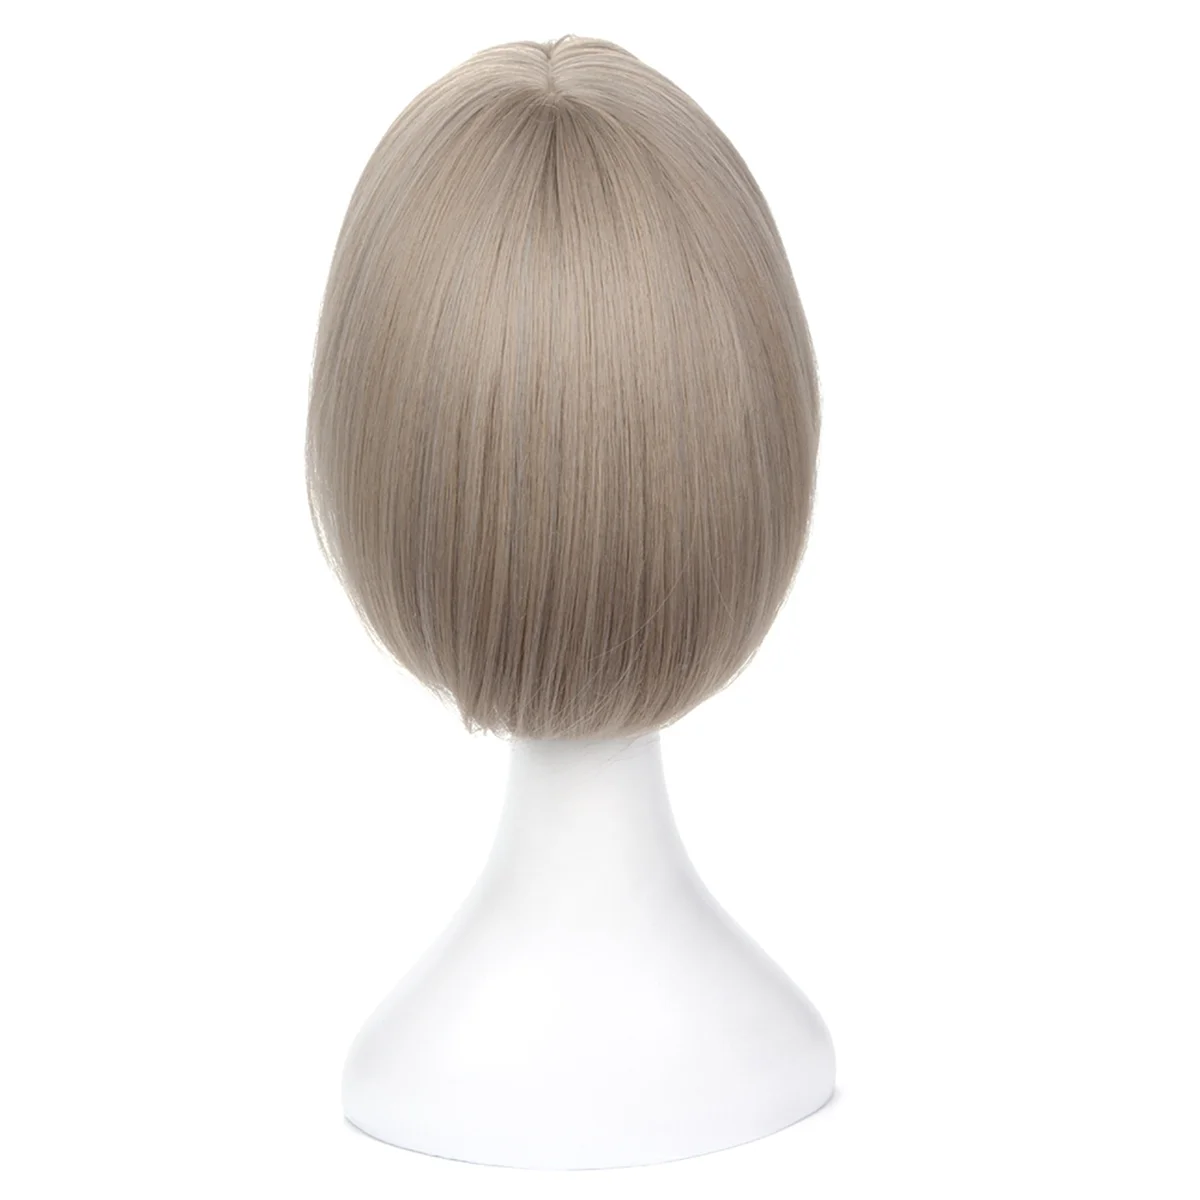 Peruka Bob Bobo dla kobiet, naturalny wygląd peruka z krótkim bobem, peruka z prostymi włosami dla początkujących na co dzień koreańska wersje szare